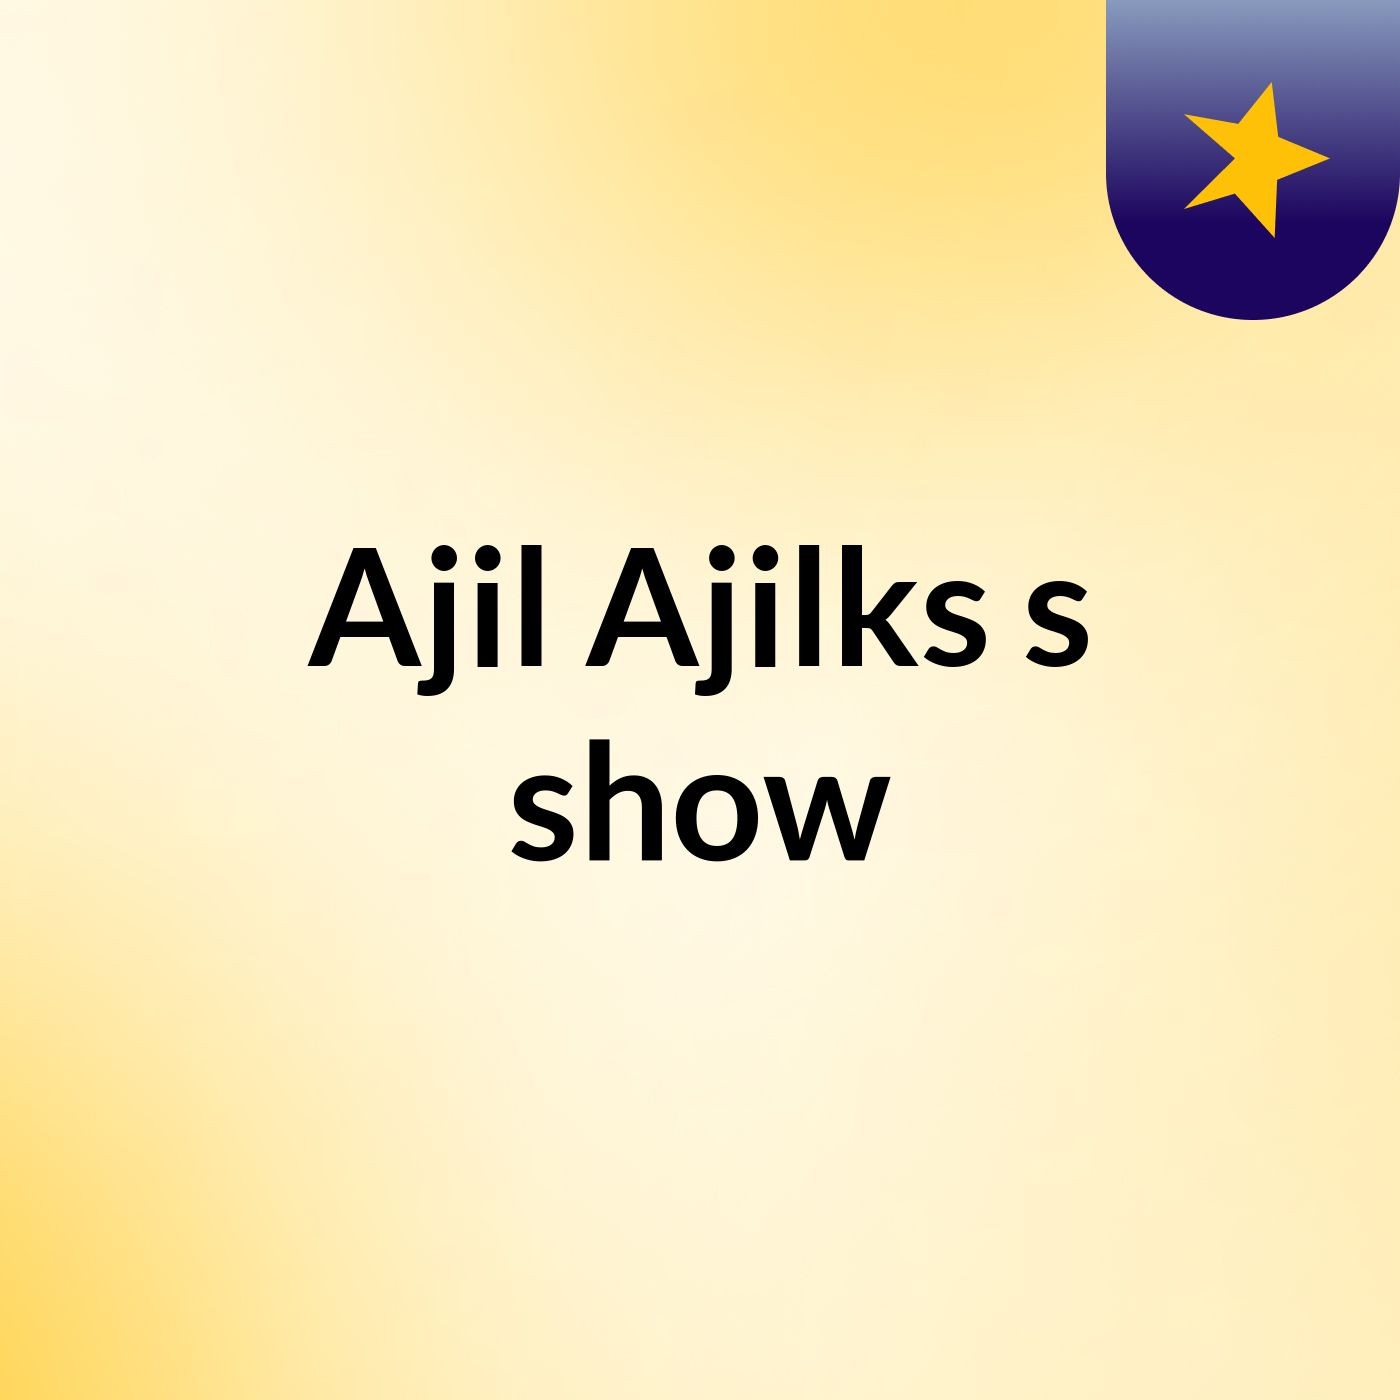 Ajil Ajilks's show